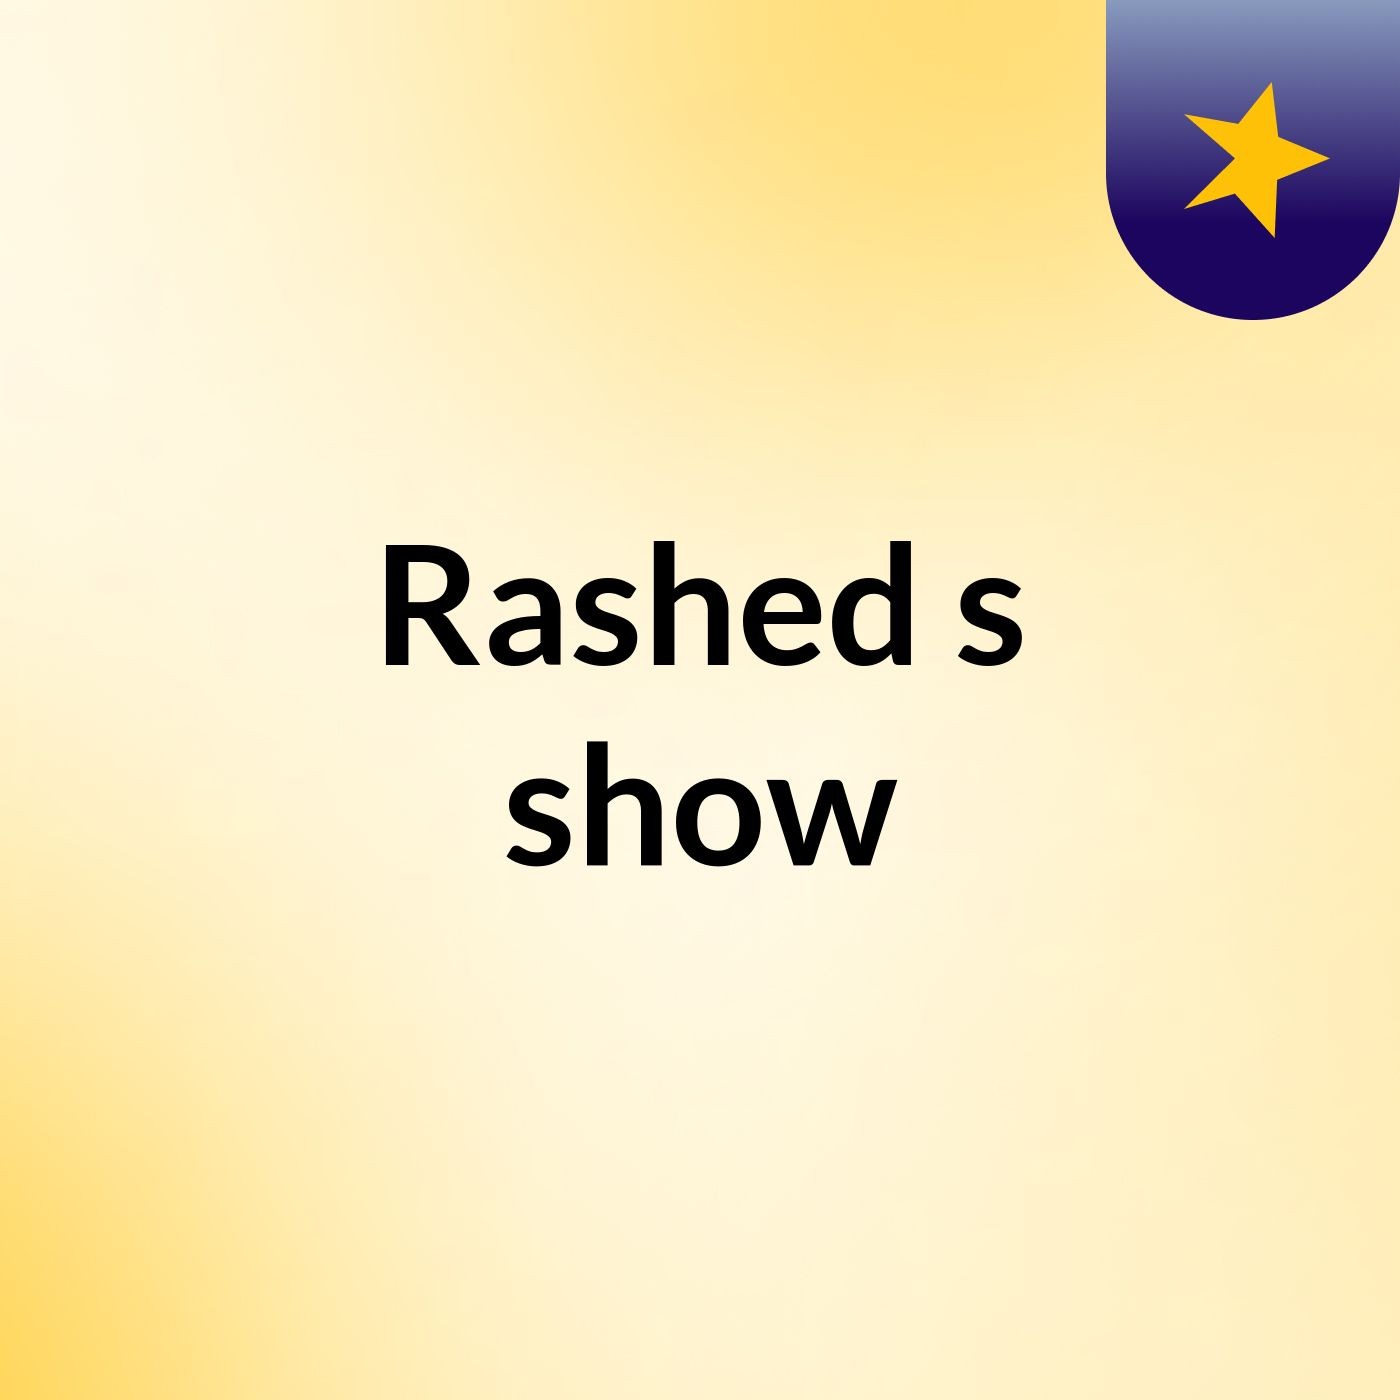 Rashed's show